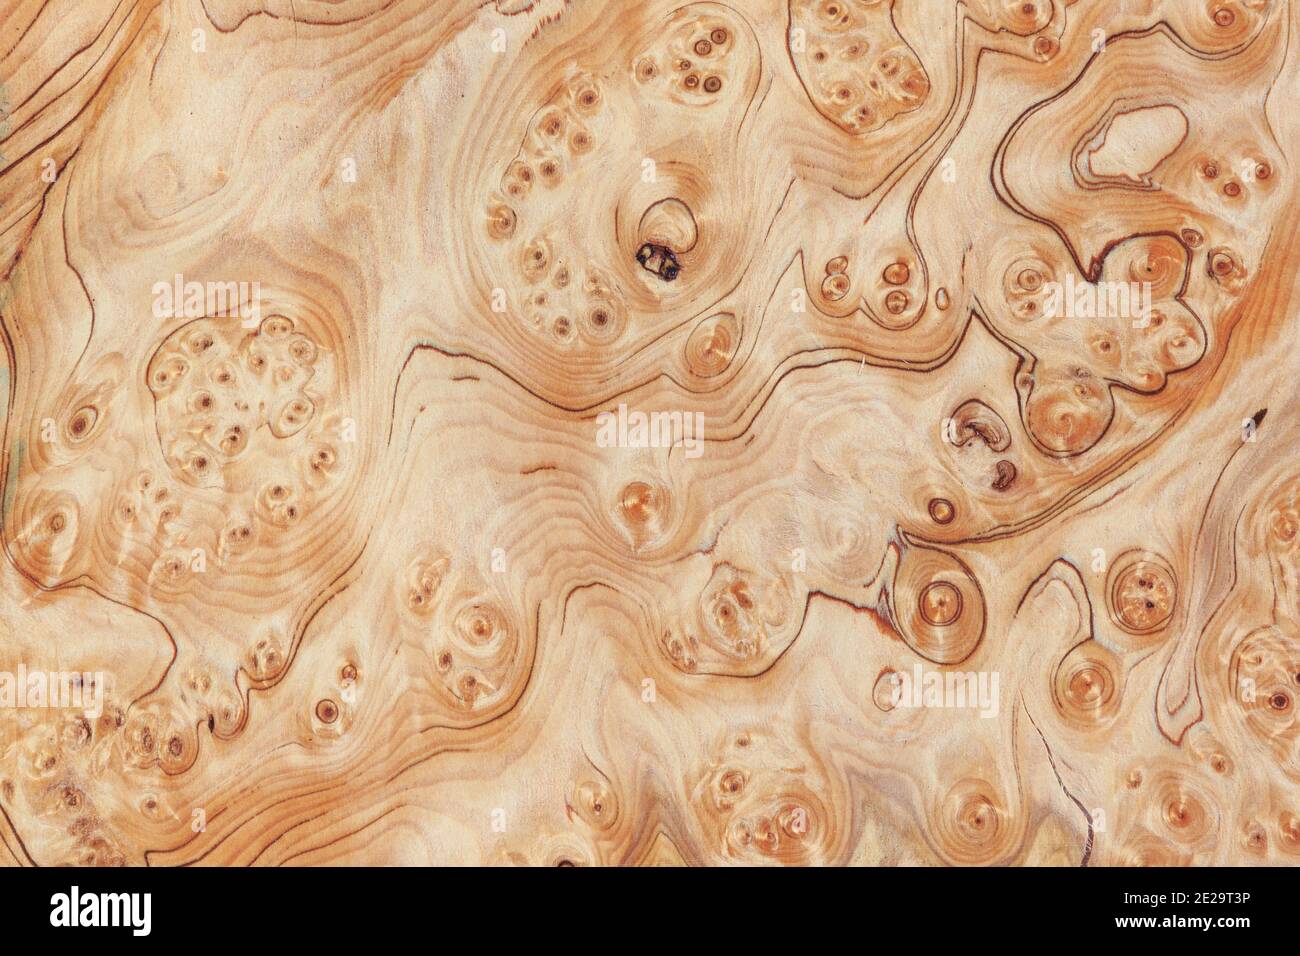 Arrière-plan de texture de terrier de bois. Image haute résolution de la burr de grain exotique de placage de bois dur. Banque D'Images